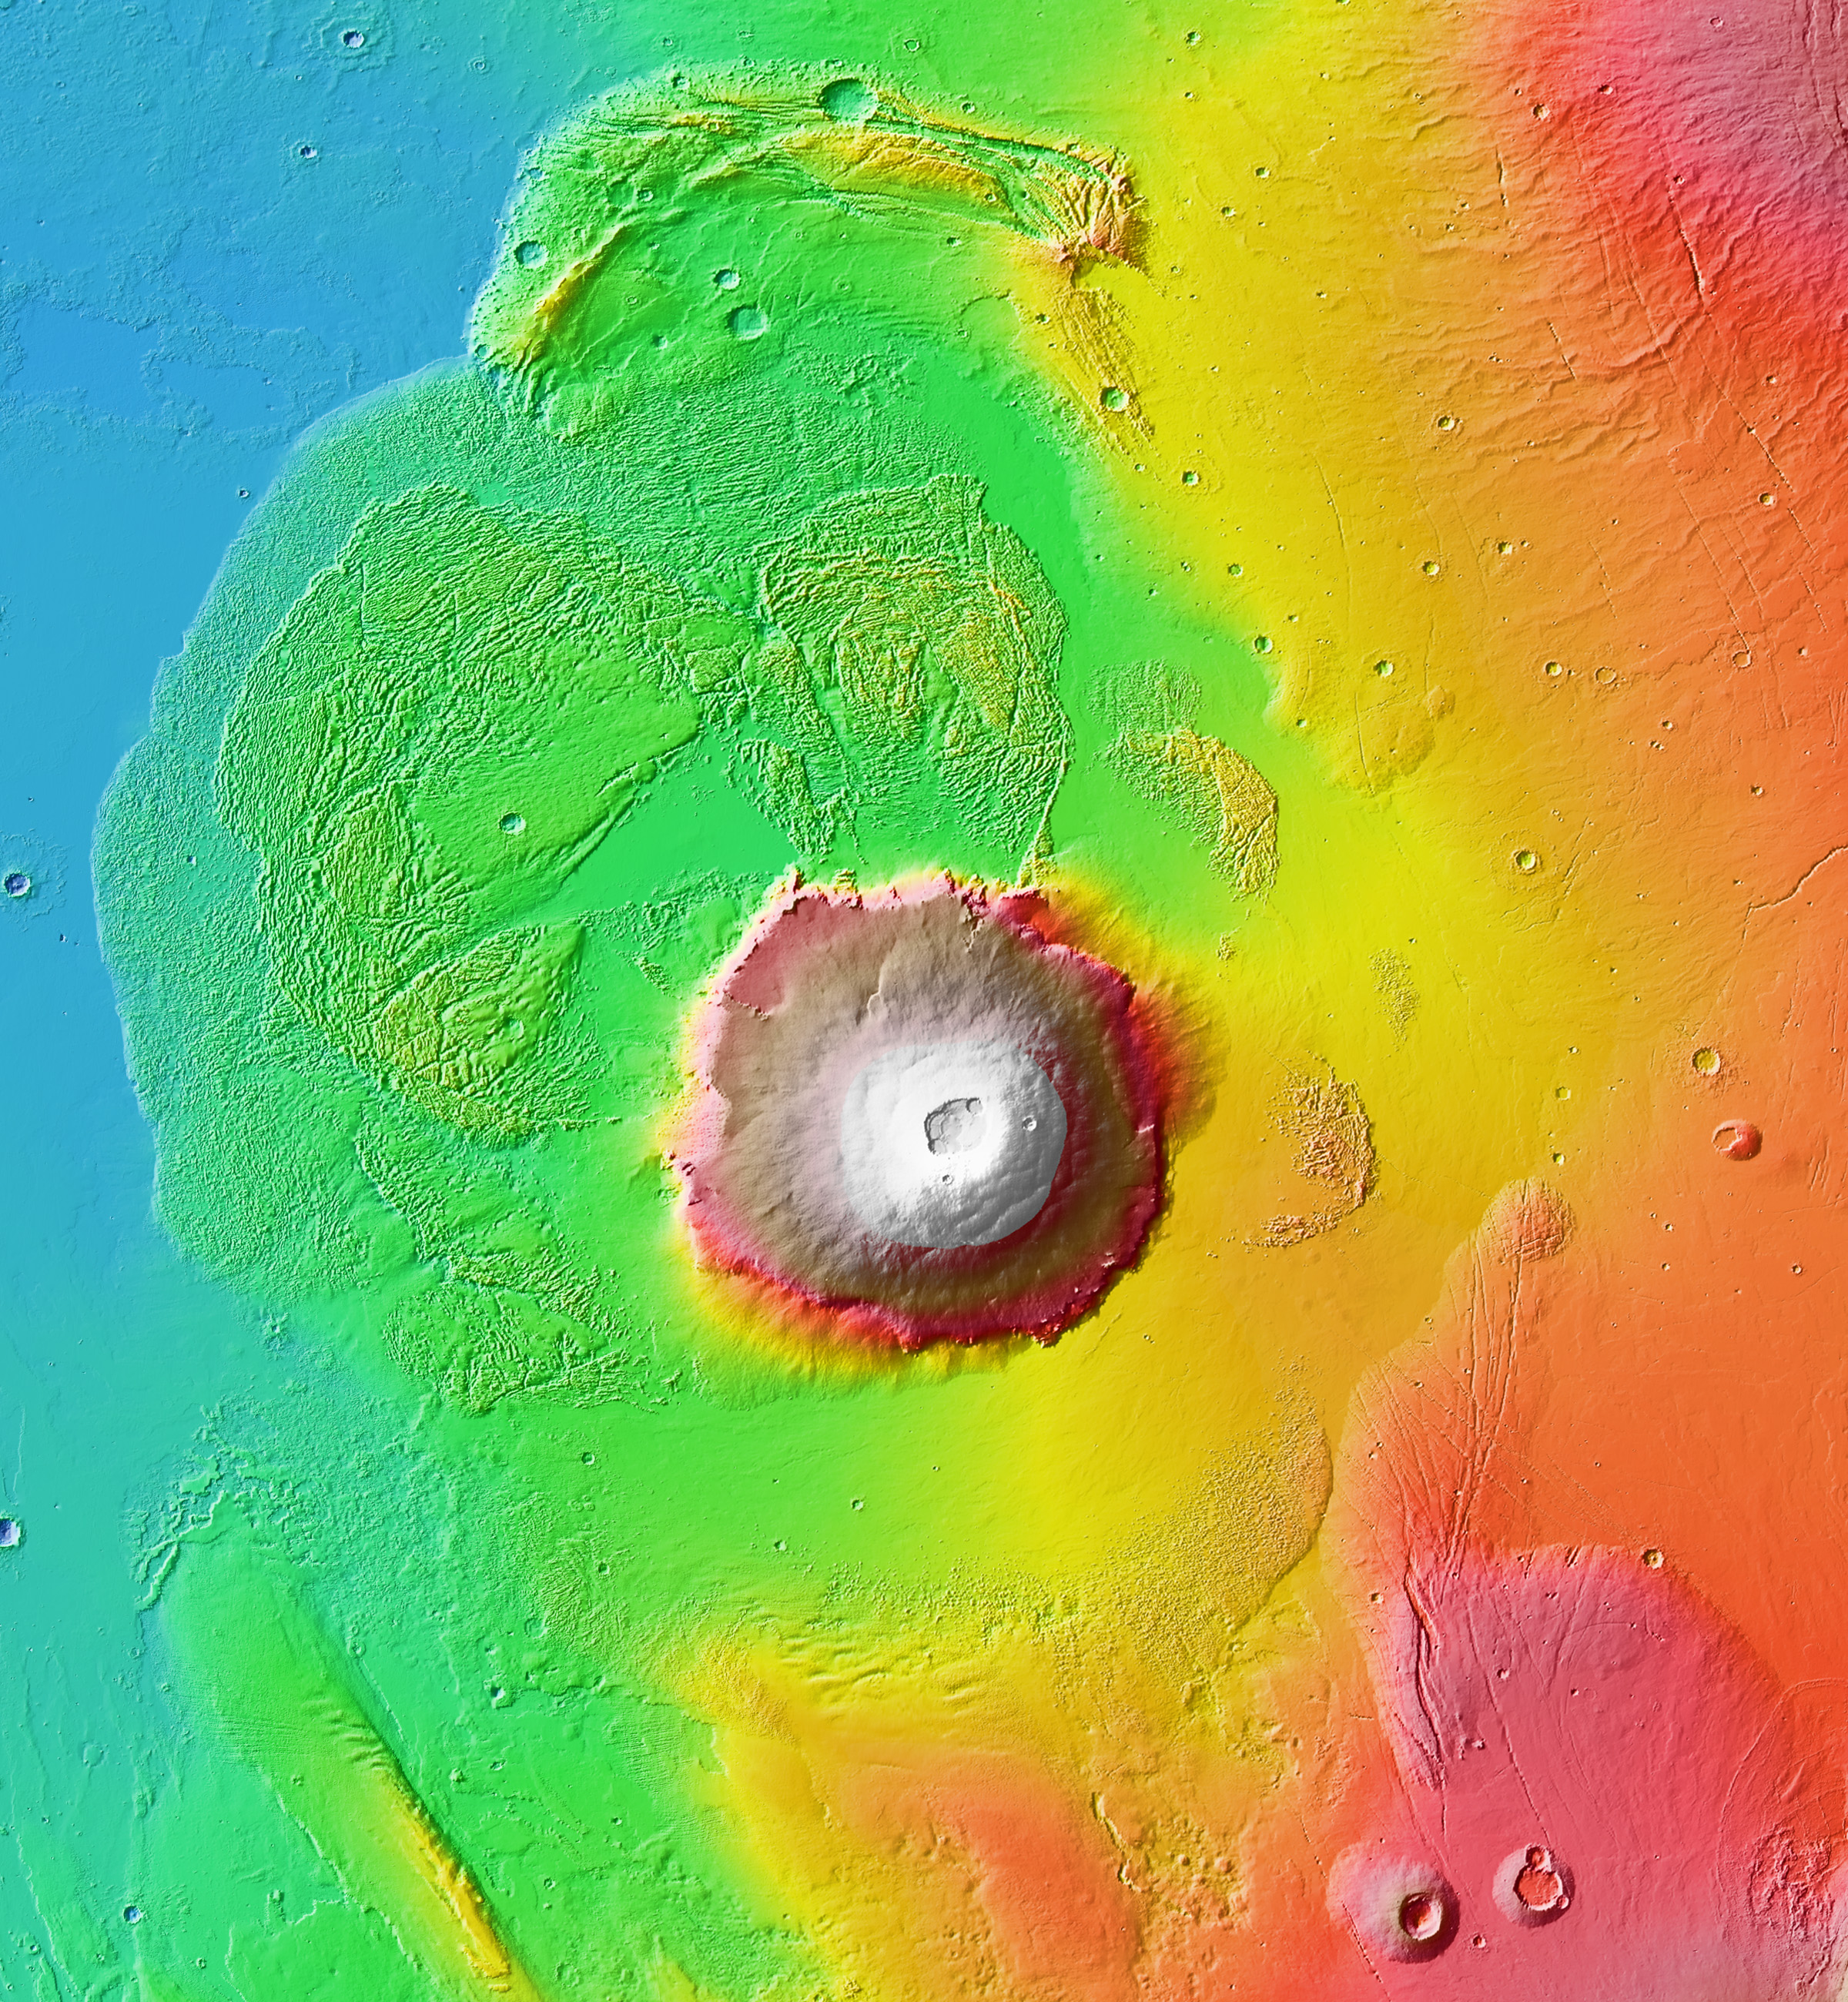 来自 Wikipedia:File:Olympus Mons aureole MOLA zoom 64.jpg，公共领域作品